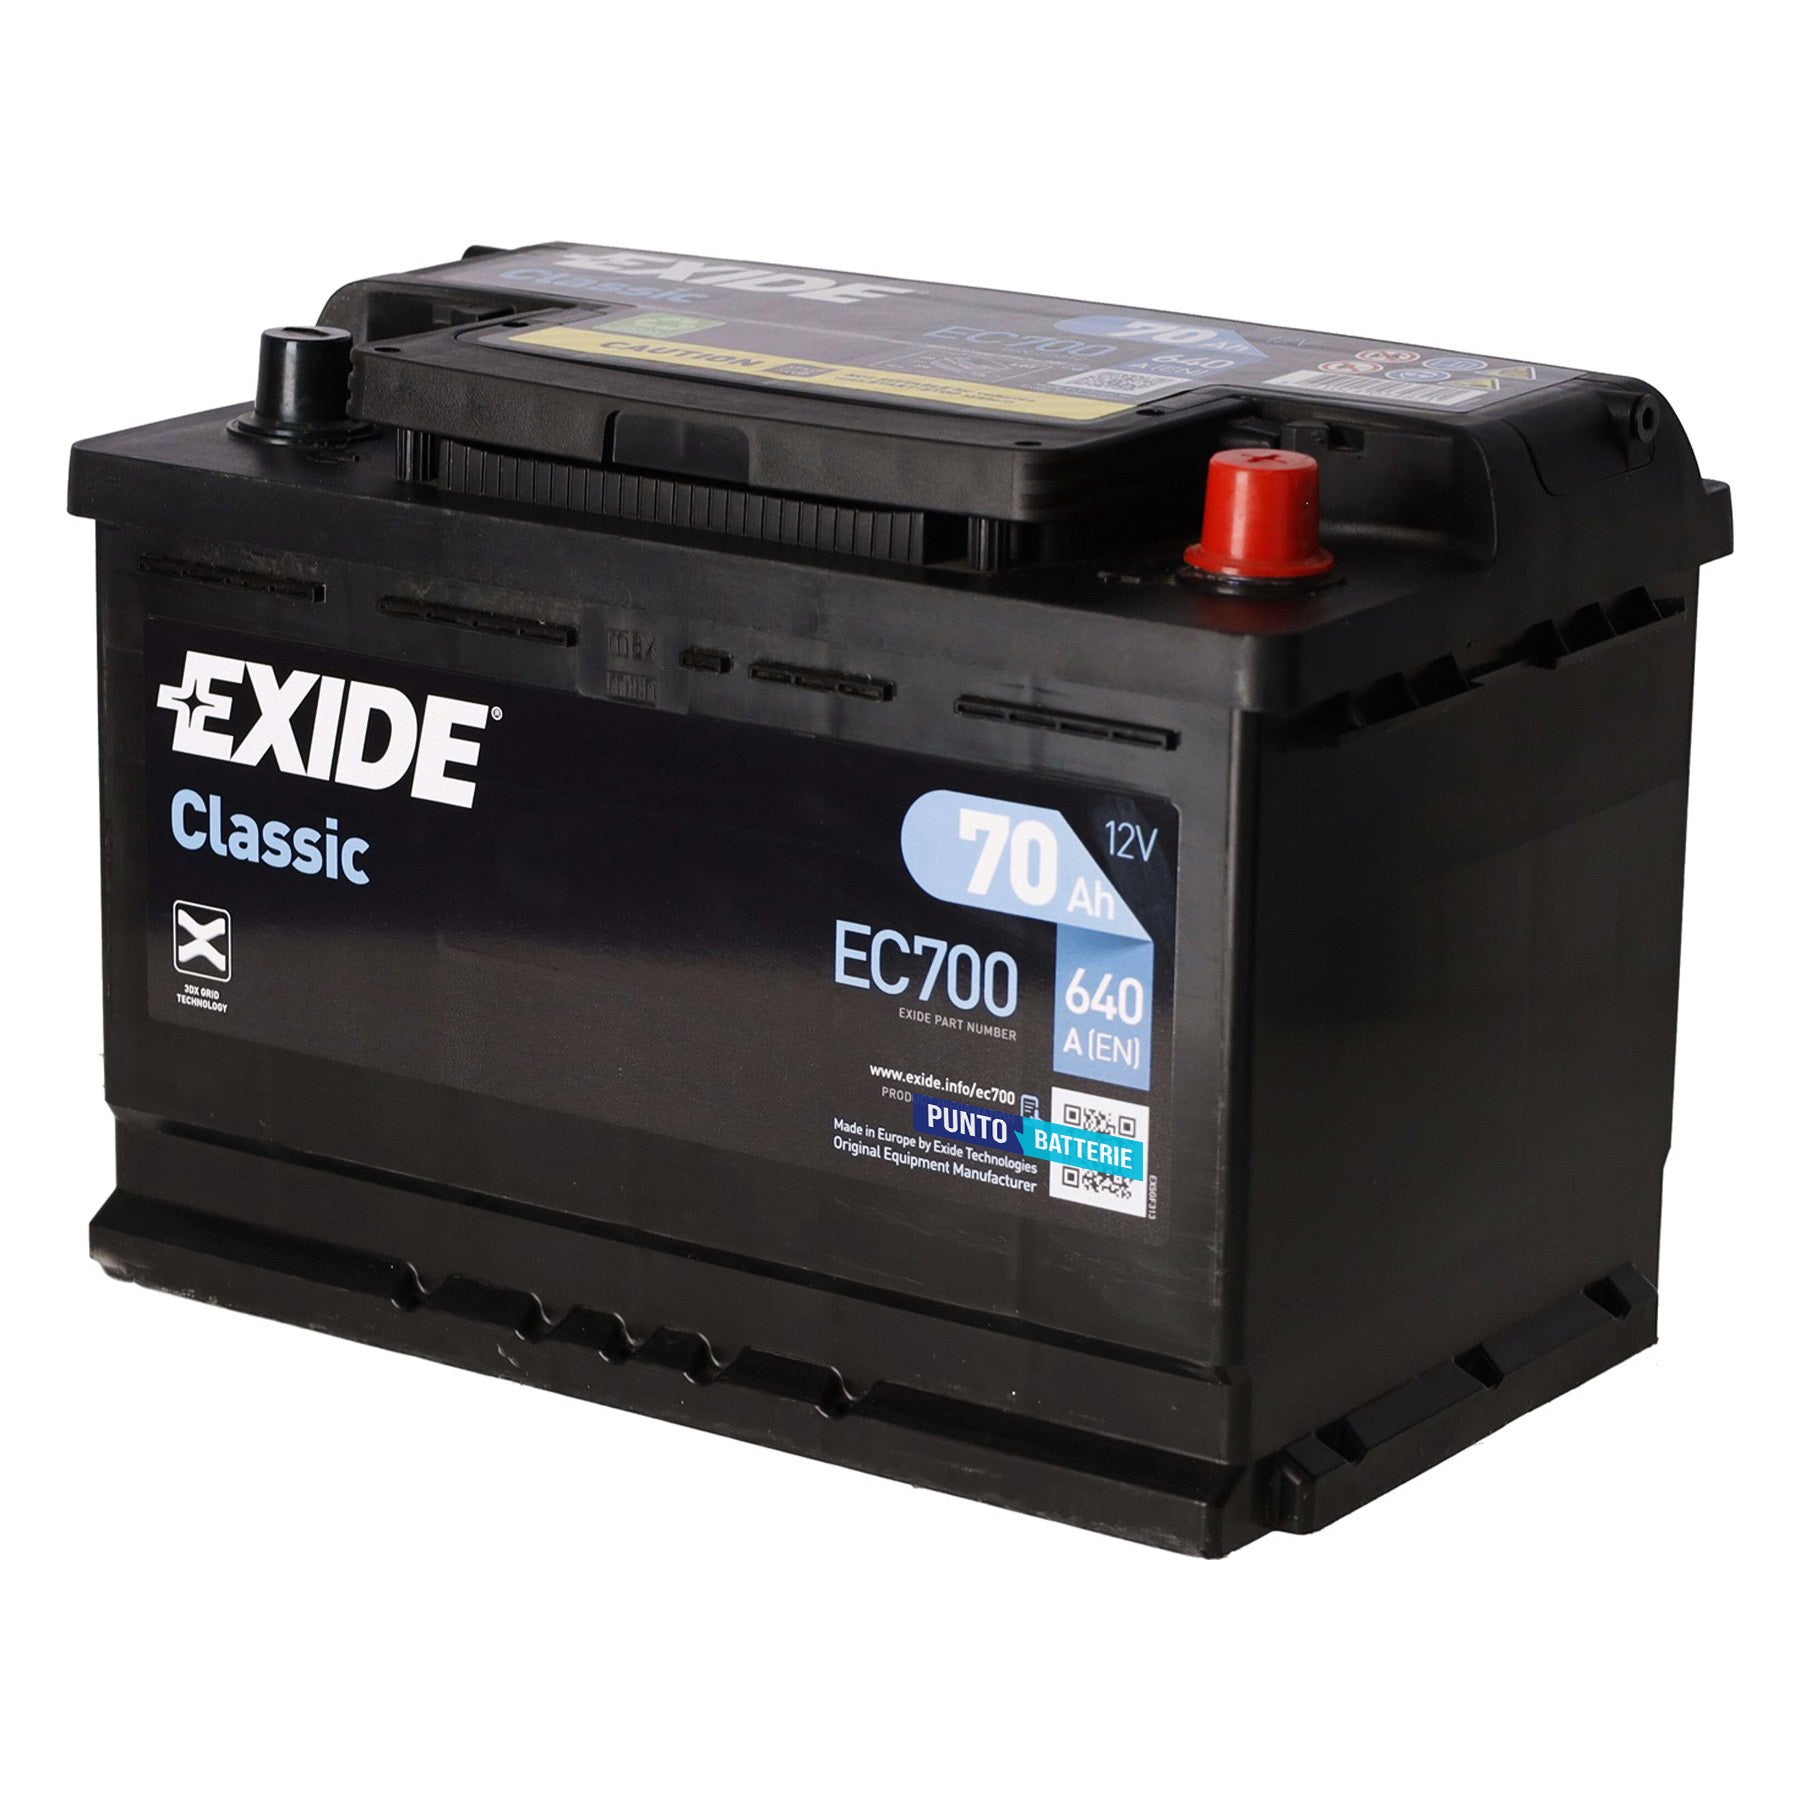 Batteria originale Exide Classic EC700, dimensioni 278 x 175 x 190, polo positivo a destra, 12 volt, 70 amperora, 640 ampere. Batteria per auto e veicoli leggeri.